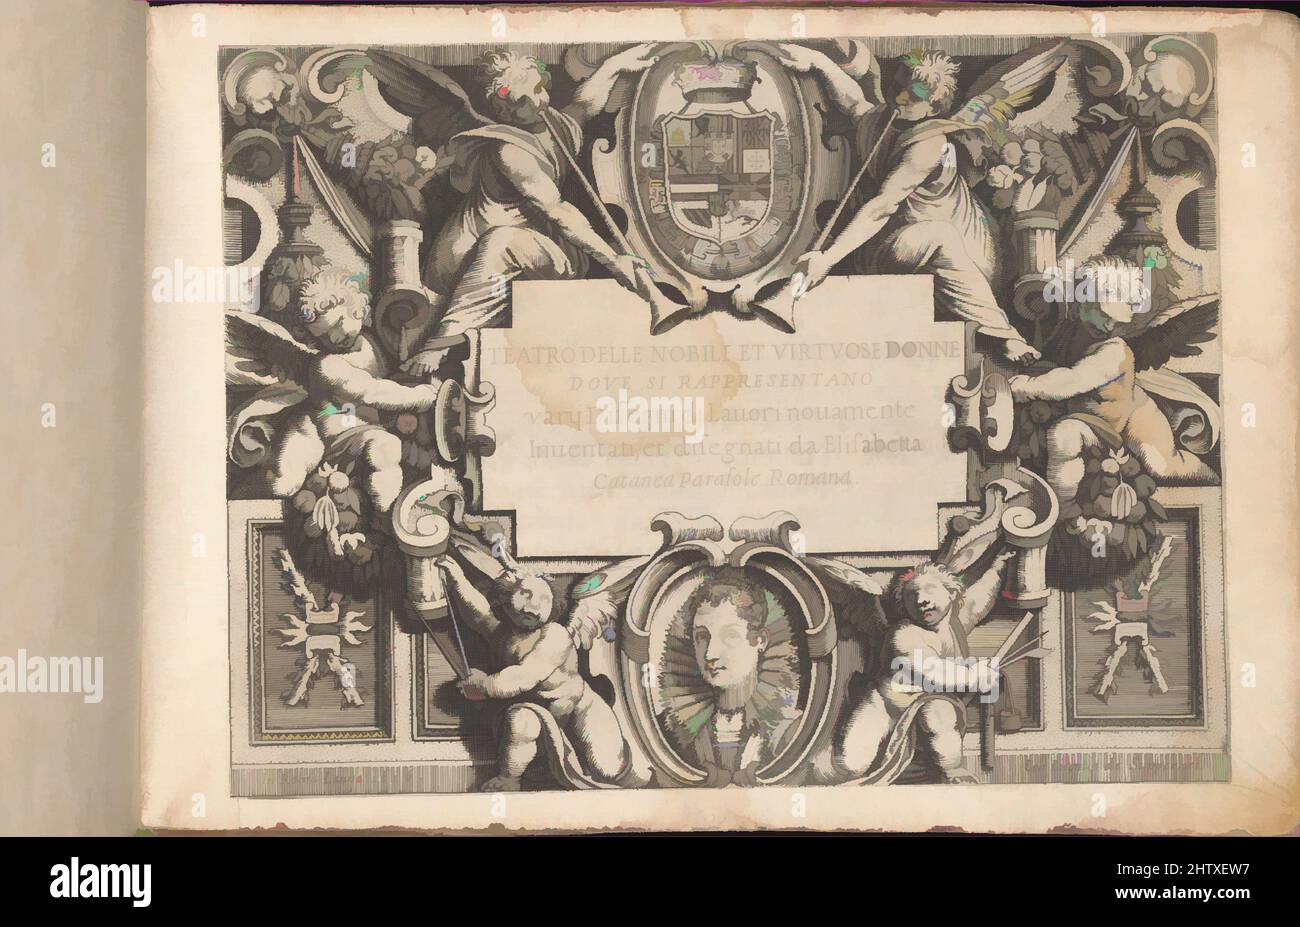 Art inspiré par Teatro delle Nobili et Virtuose donne..., 1616, coupe de bois, gravure, total: 7 1/2 x 10 7/16 po. (19 x 26,5 cm), écrit par Isabella Catanea Parasole, Italien, ca. 1575 environ 1625, publié par Mauritio Bona, Rome. Gravé page de titre illustrée, dédicace avec la coupe de bois, oeuvres classiques modernisées par Artotop avec une touche de modernité. Formes, couleur et valeur, impact visuel accrocheur sur l'art émotions par la liberté d'œuvres d'art d'une manière contemporaine. Un message intemporel qui cherche une nouvelle direction créative. Artistes qui se tournent vers le support numérique et créent le NFT Artotop Banque D'Images